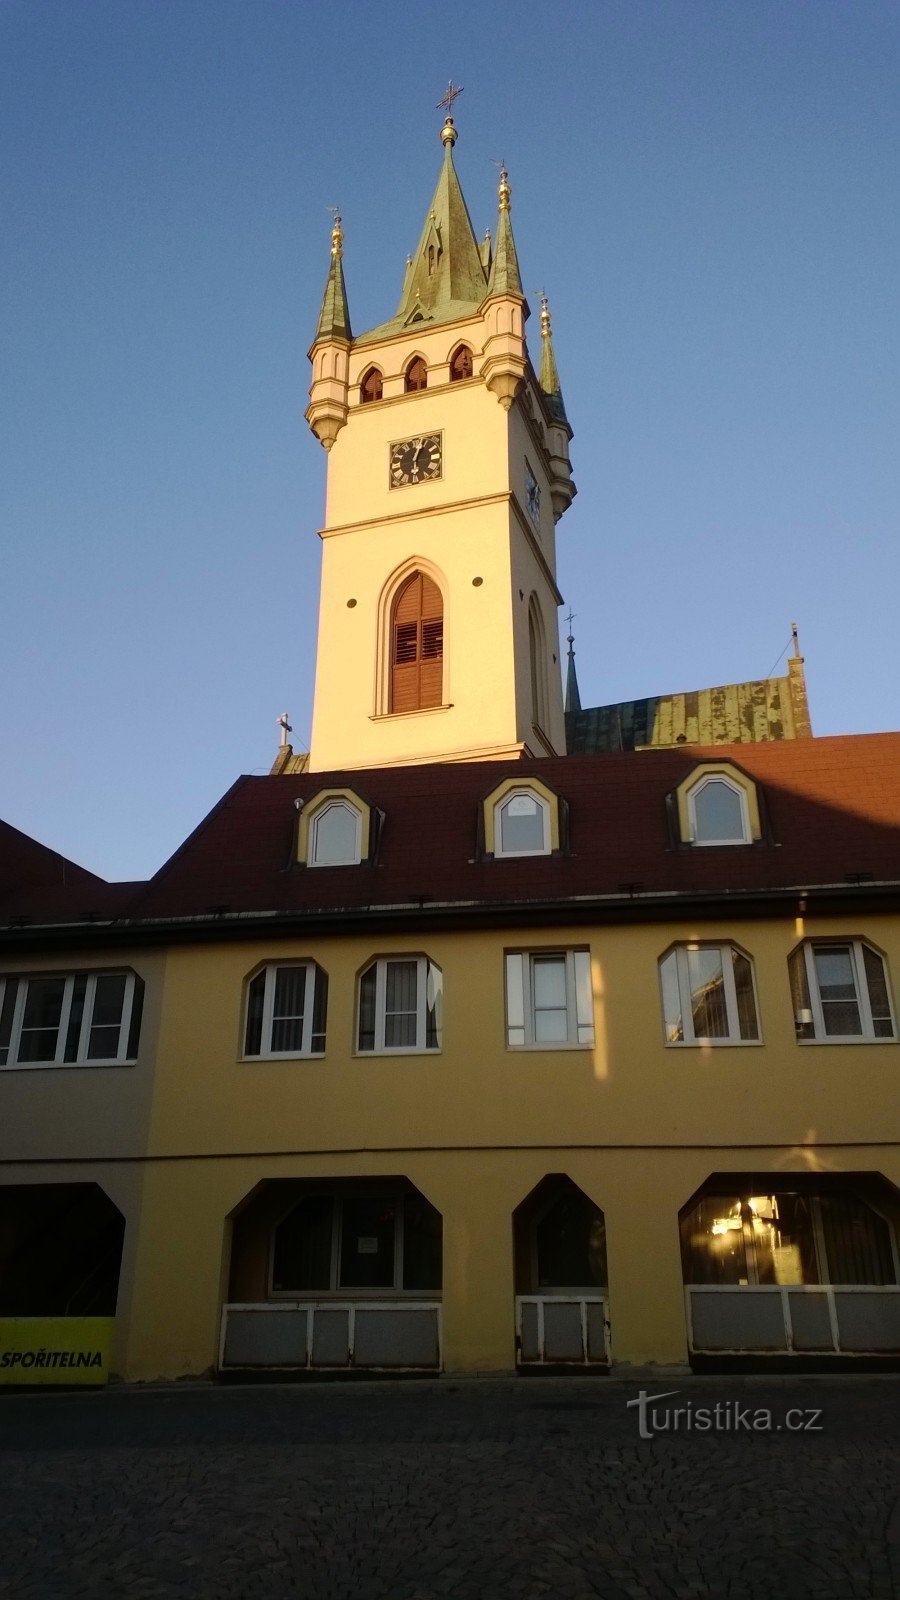 De toren van de kerk van St. Nicolaas.